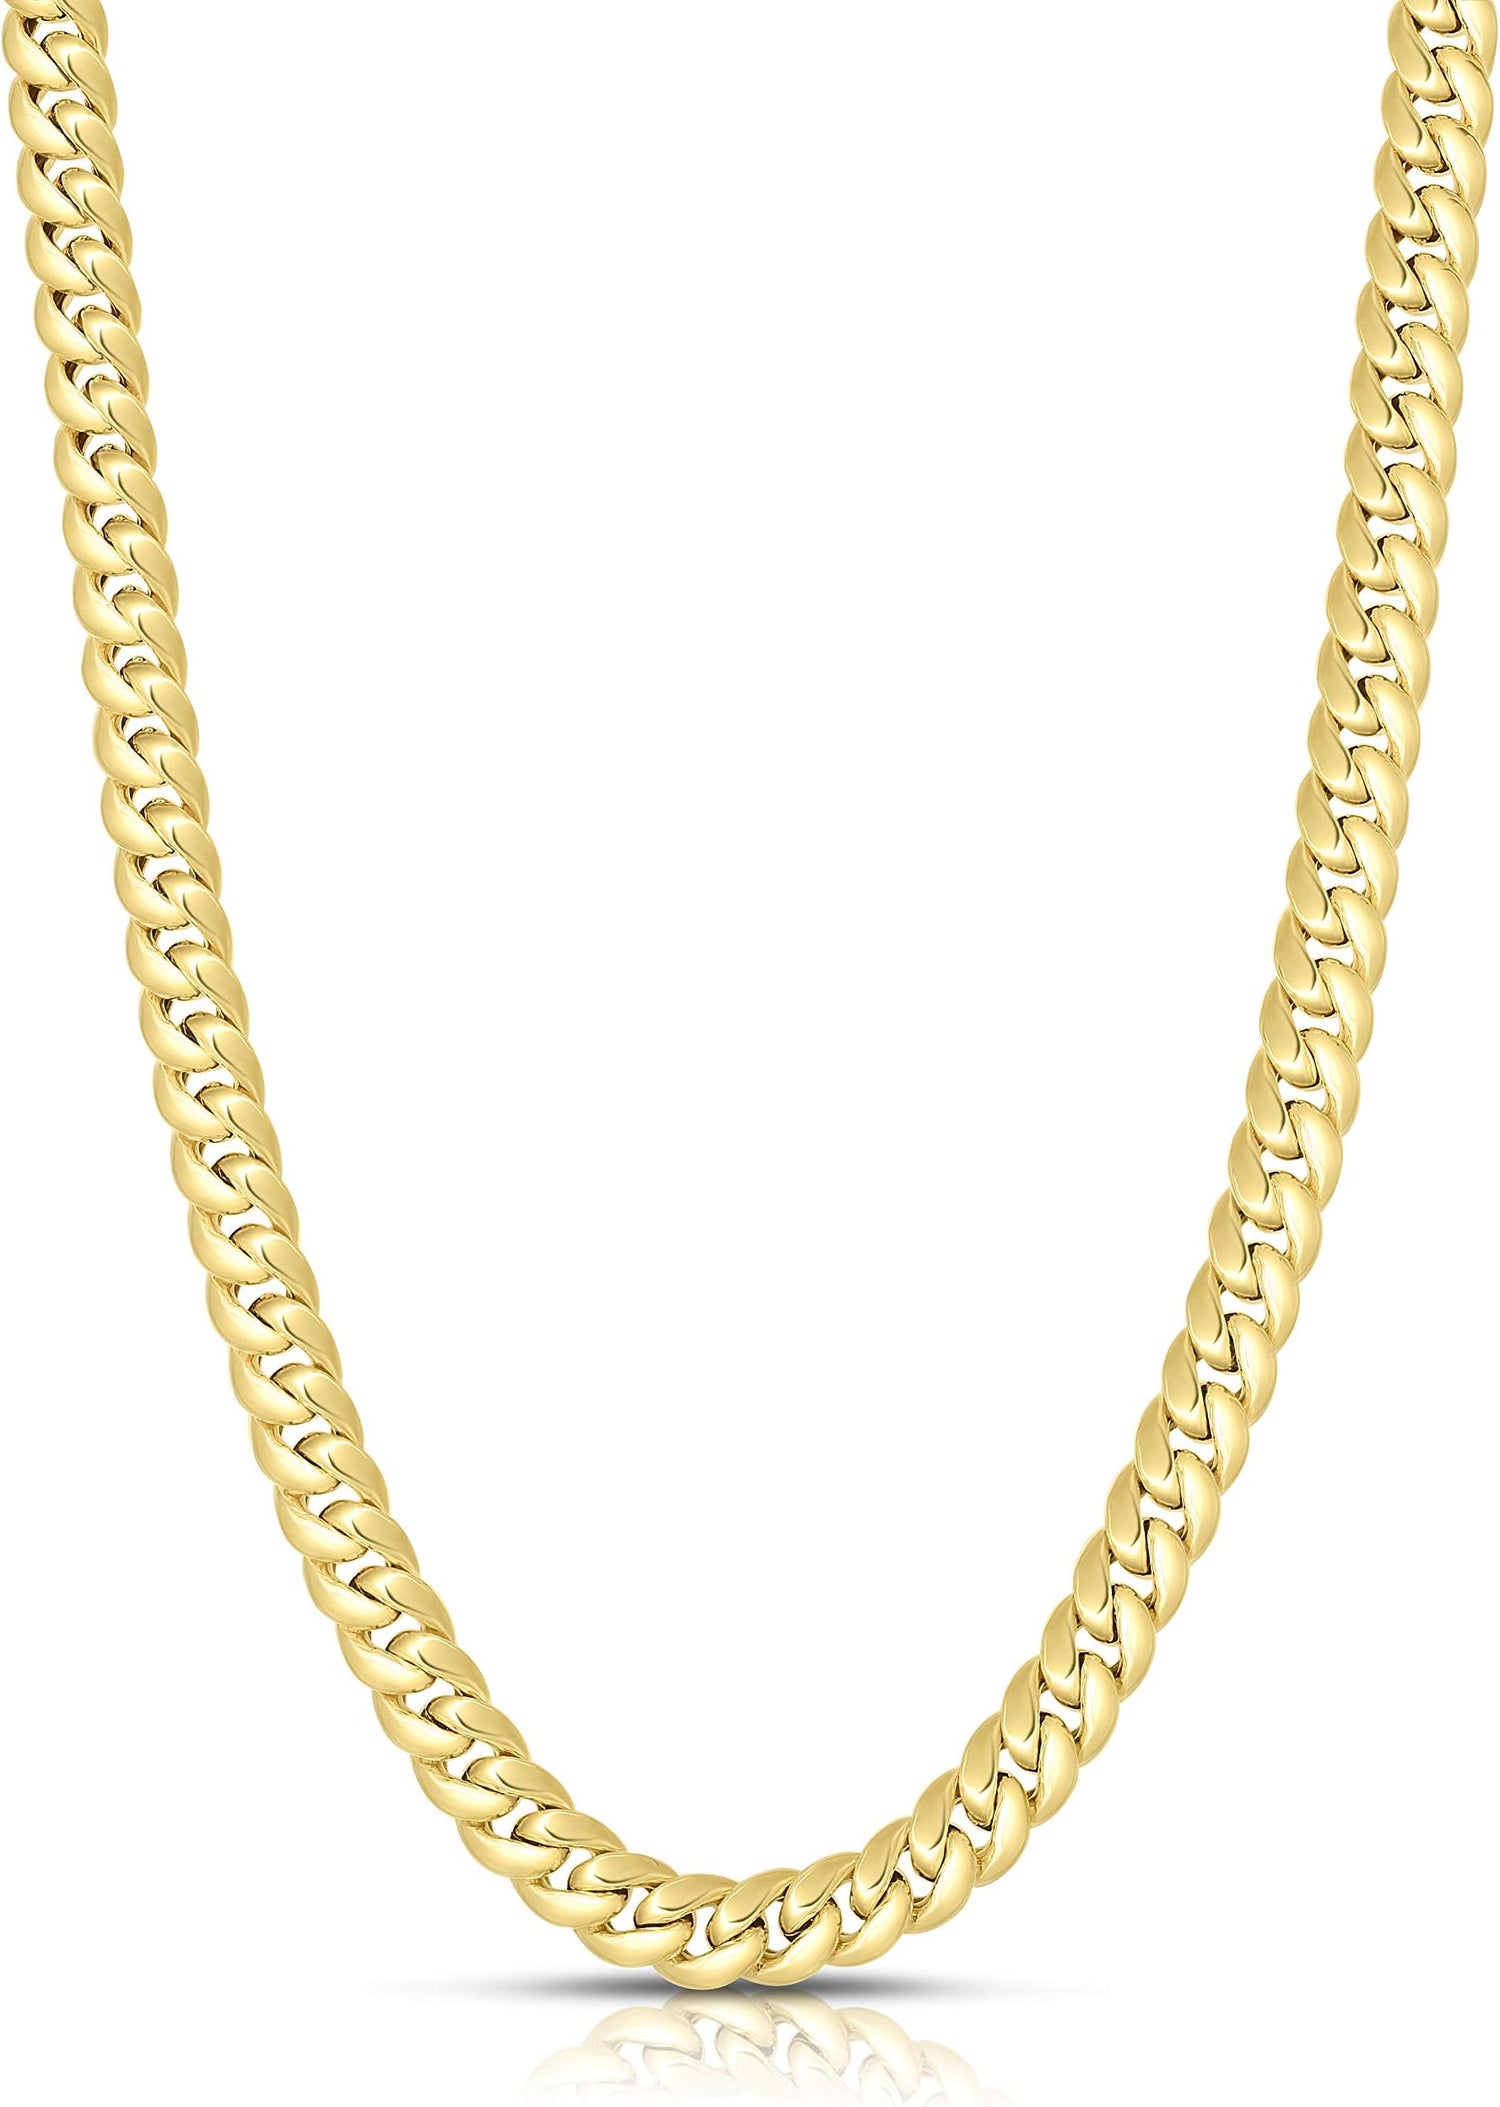 14k Yellow Gold 5mm Semi-Lite Miami Cuban Chain Necklace